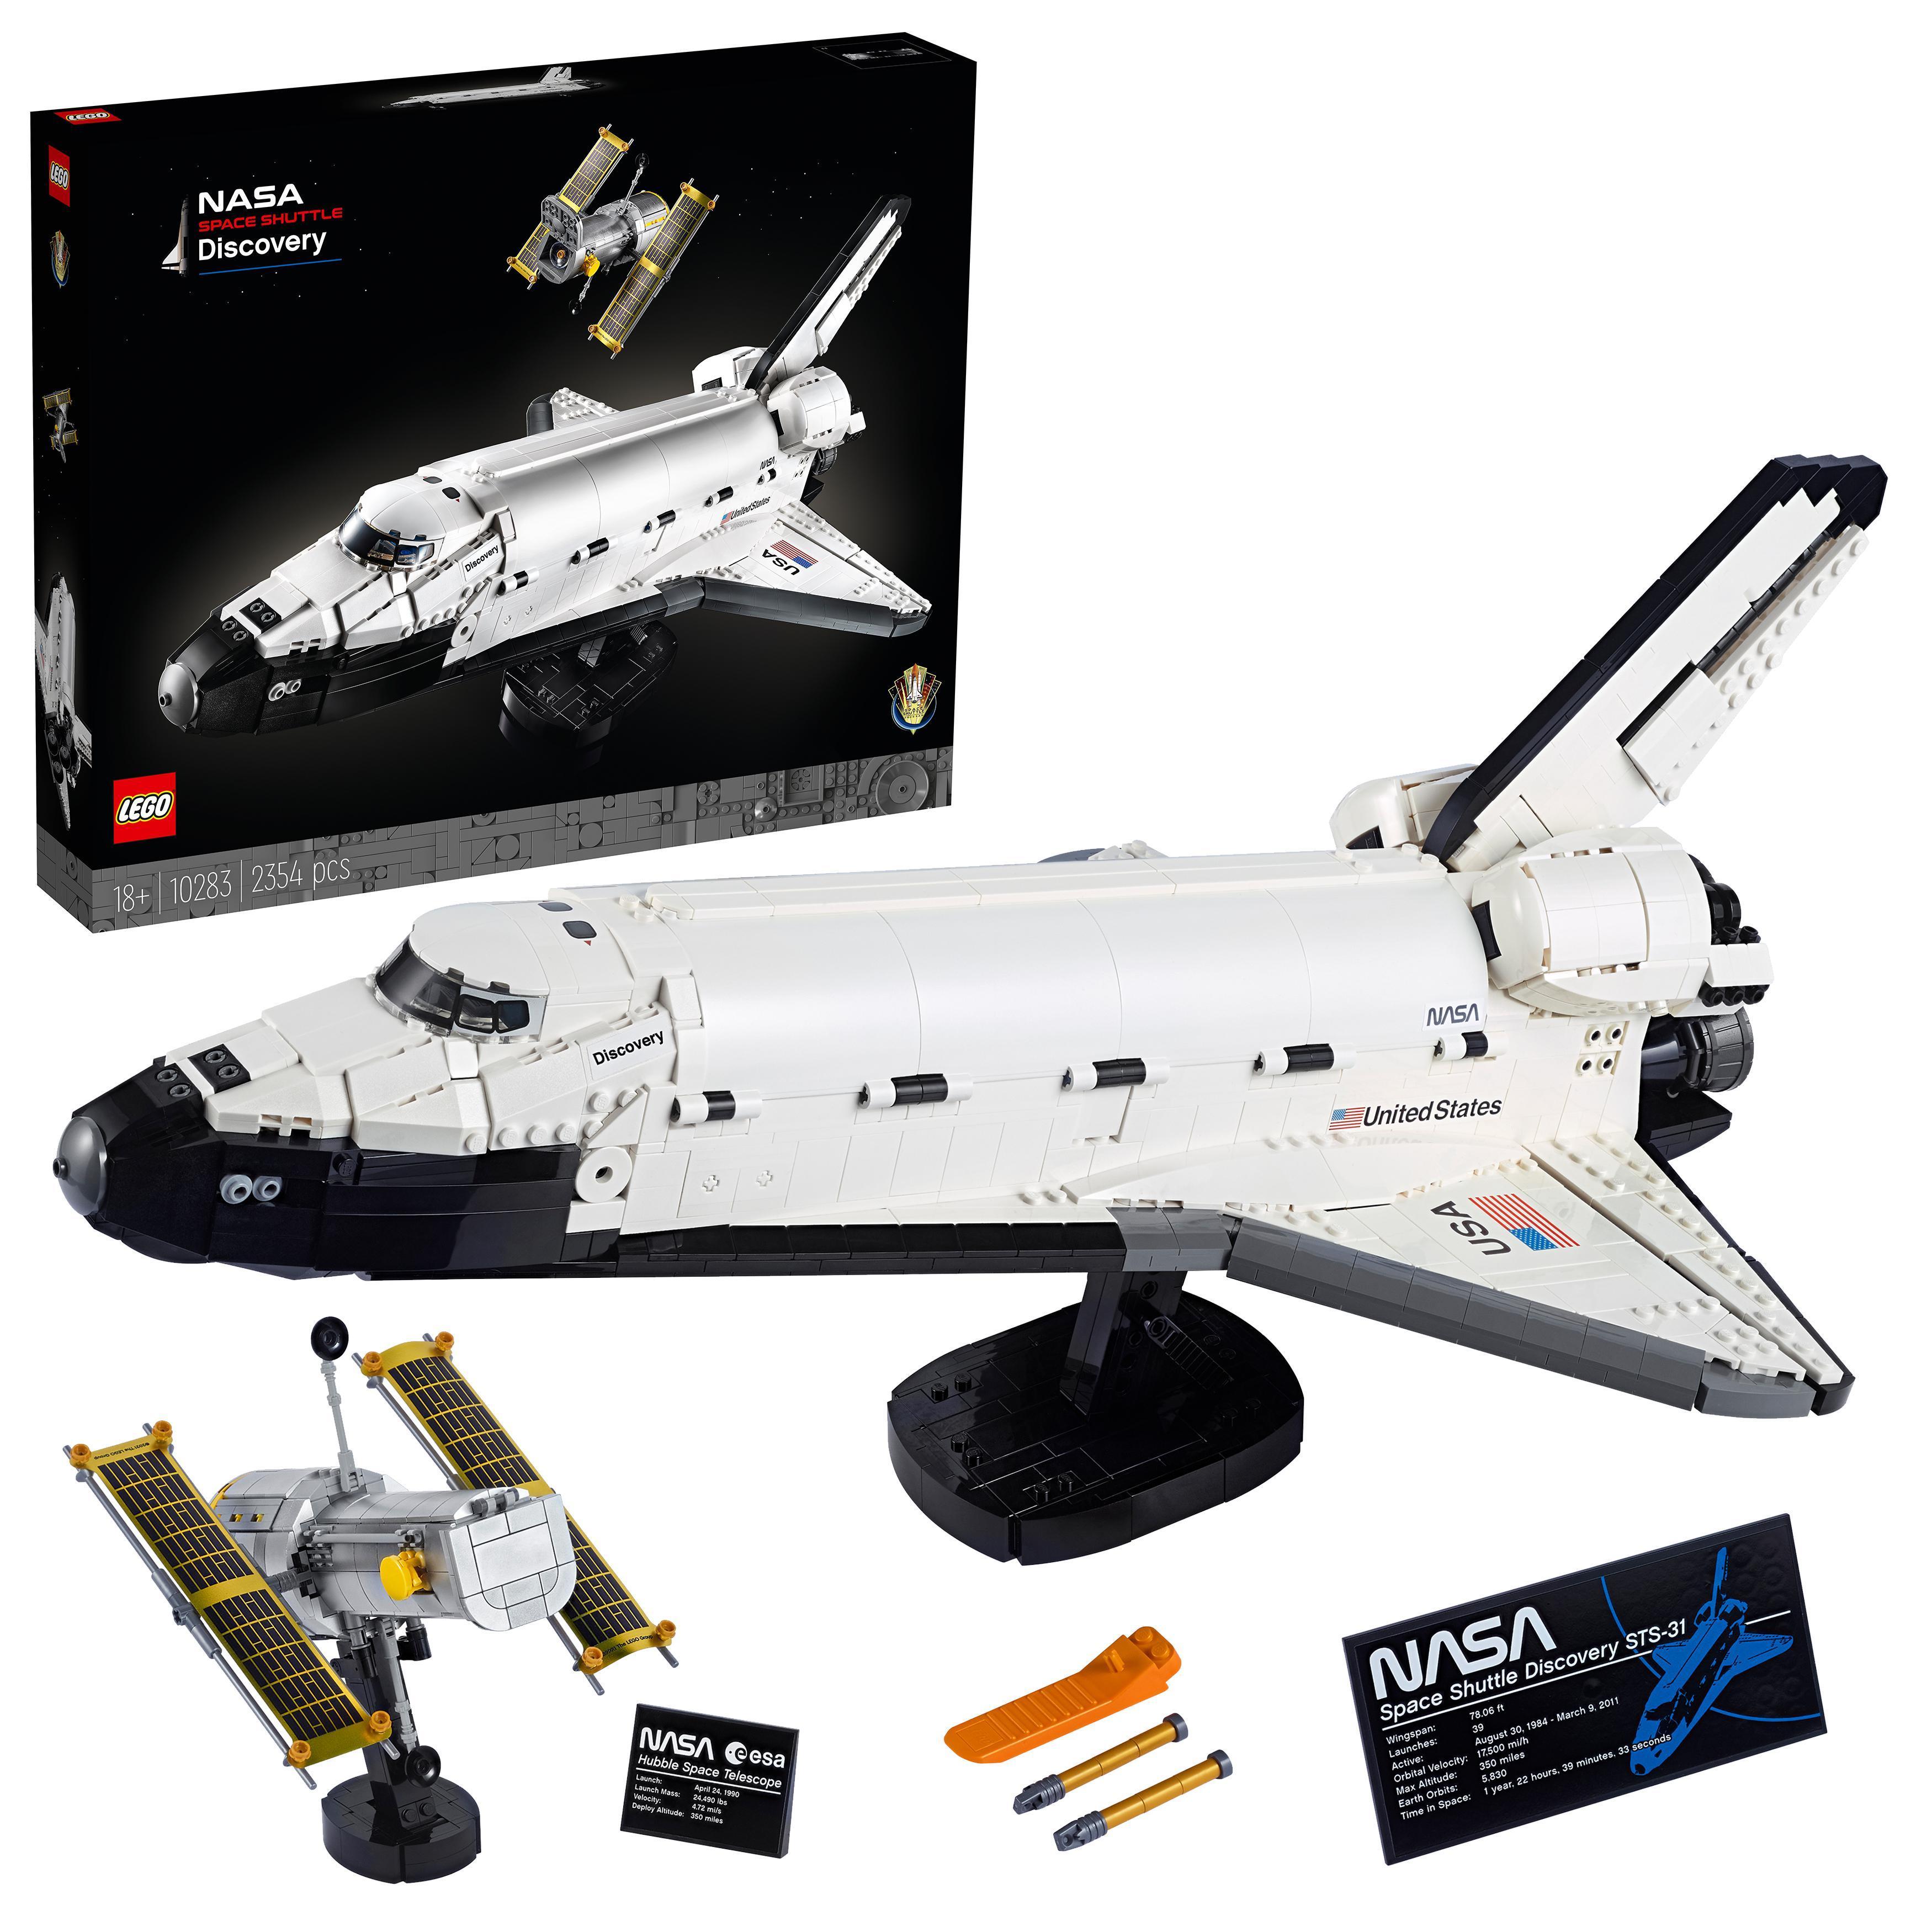 Forkorte brændstof skærm Køb LEGO Creator - NASA-rumfærgen Opdagelse (10283)